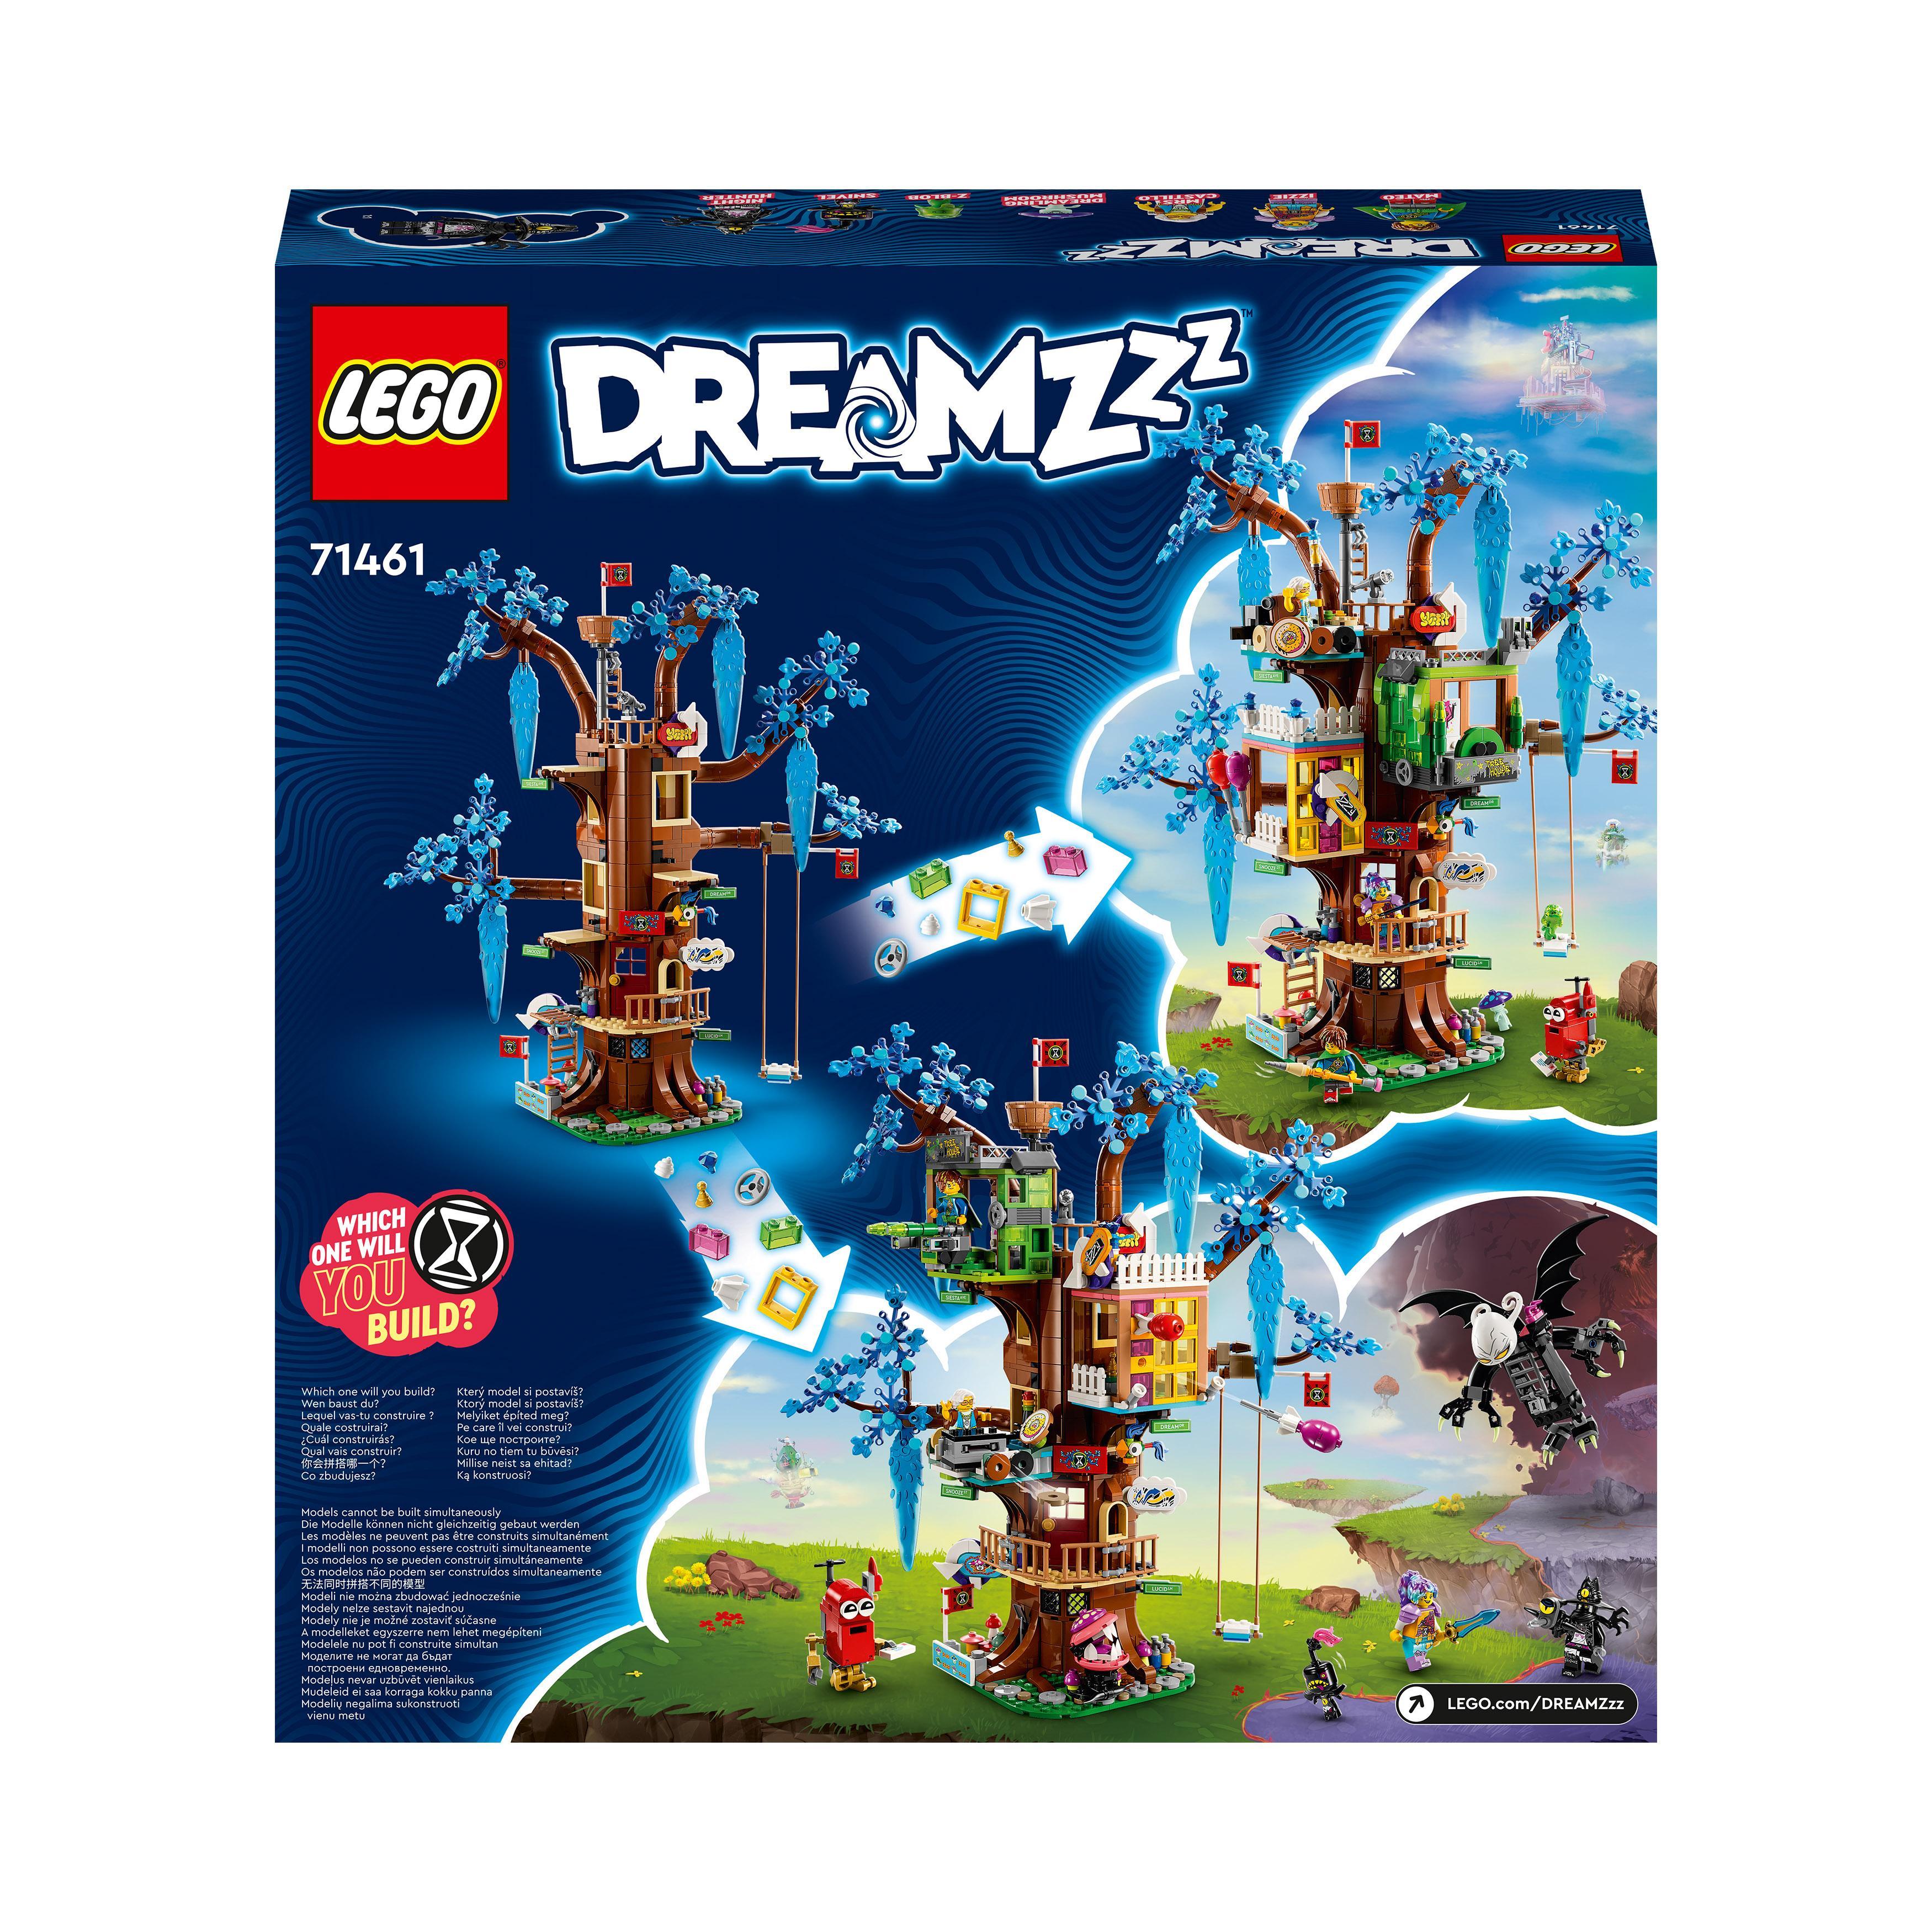 Lego dreamzzz 71461 la fantastica casa sull’albero giocattolo con 2 modalità e minifigure, giochi creativi dal tv show - Lego, LEGO DREAMZZZ